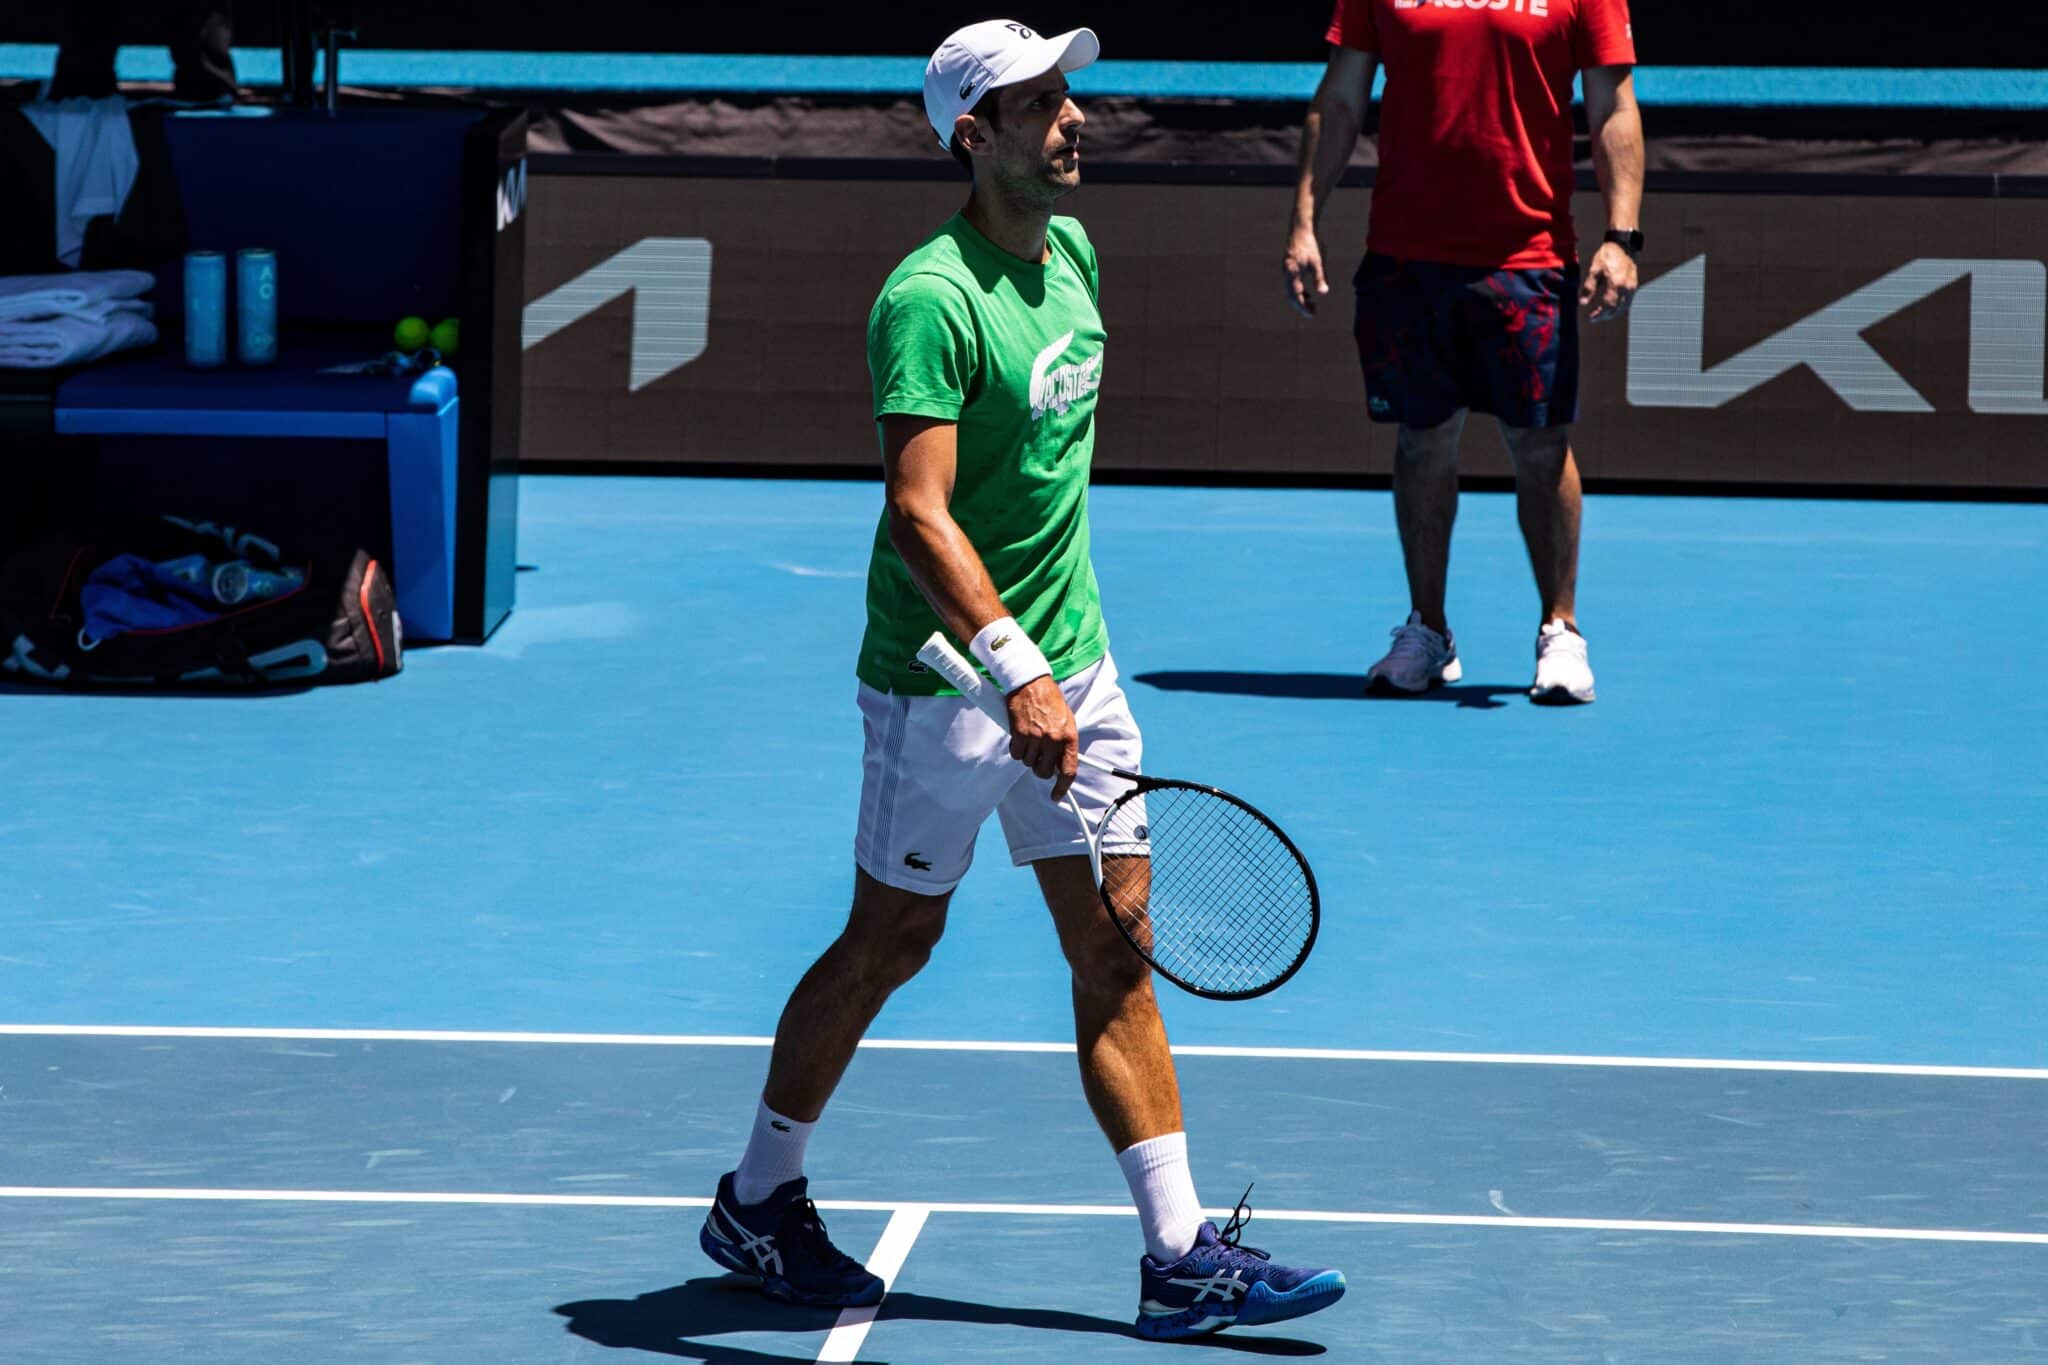 El Abierto de Australia incluye a Djokovic pese a las dudas sobre su deportación